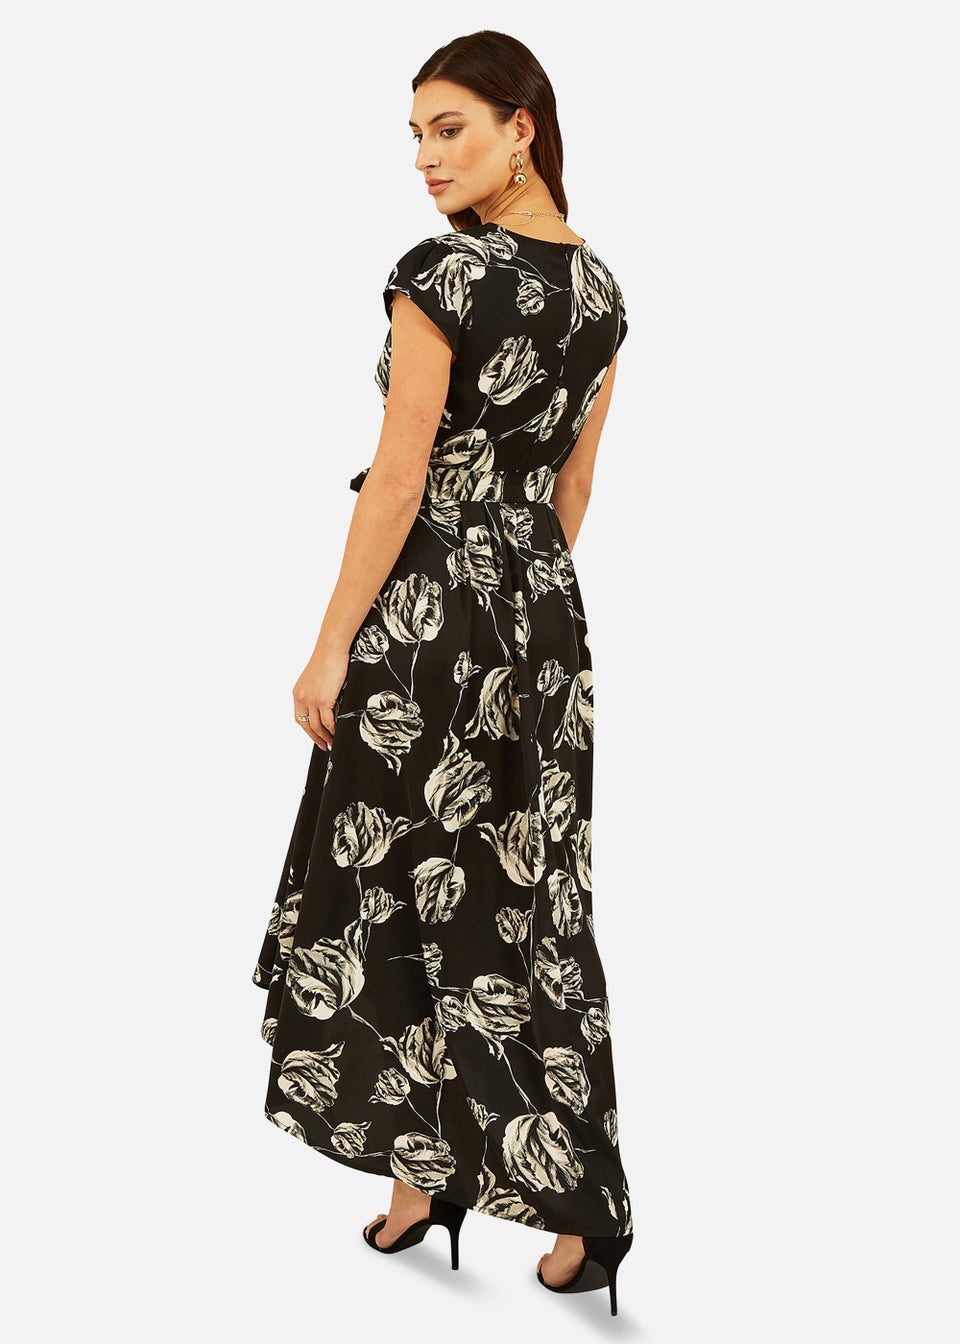 Mela Rose Print Dipped Hem Wrap Dress In Black - Matalan